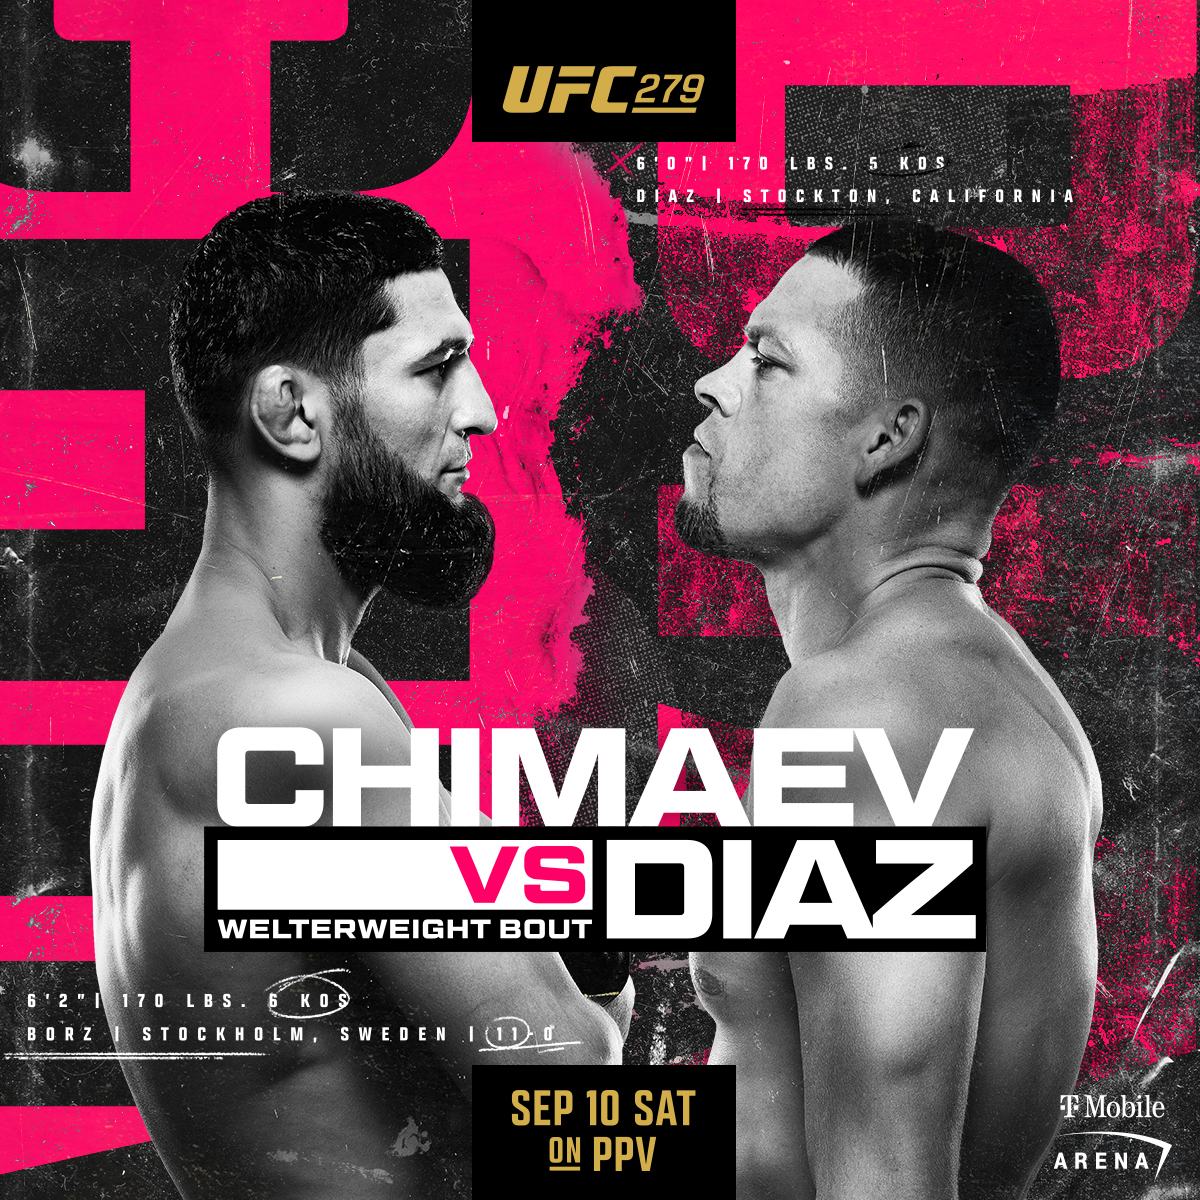 Chimaev vs Diaz